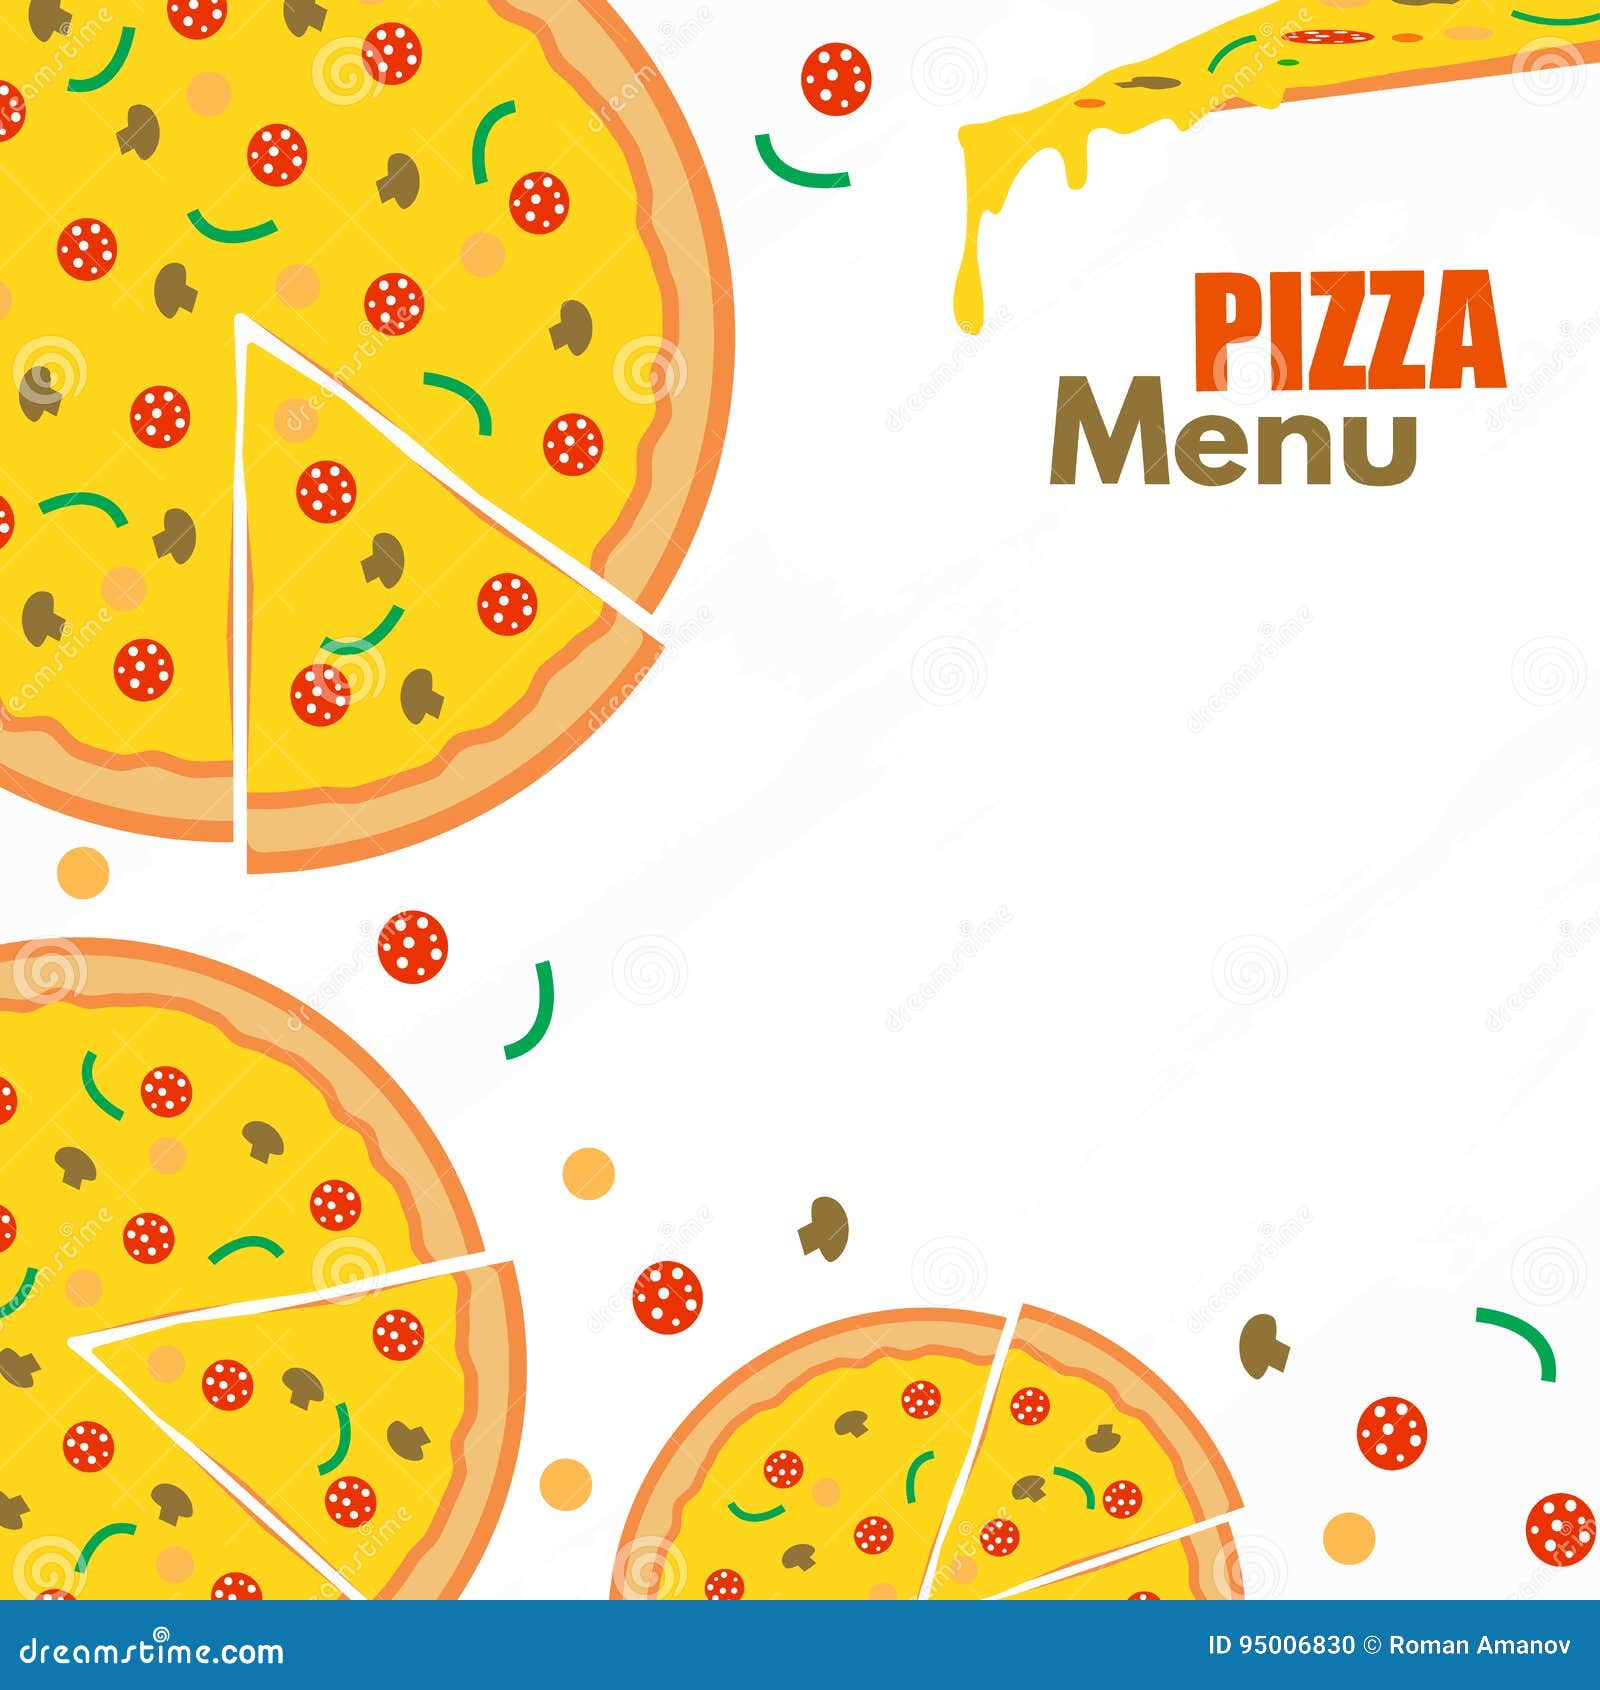 Bạn đang tìm kiếm mẫu menu pizza để áp dụng cho cửa hàng của mình? Hãy xem hình ảnh liên quan đến mẫu menu pizza vector này để tìm thấy một mẫu hoàn hảo cho doanh nghiệp của bạn. 